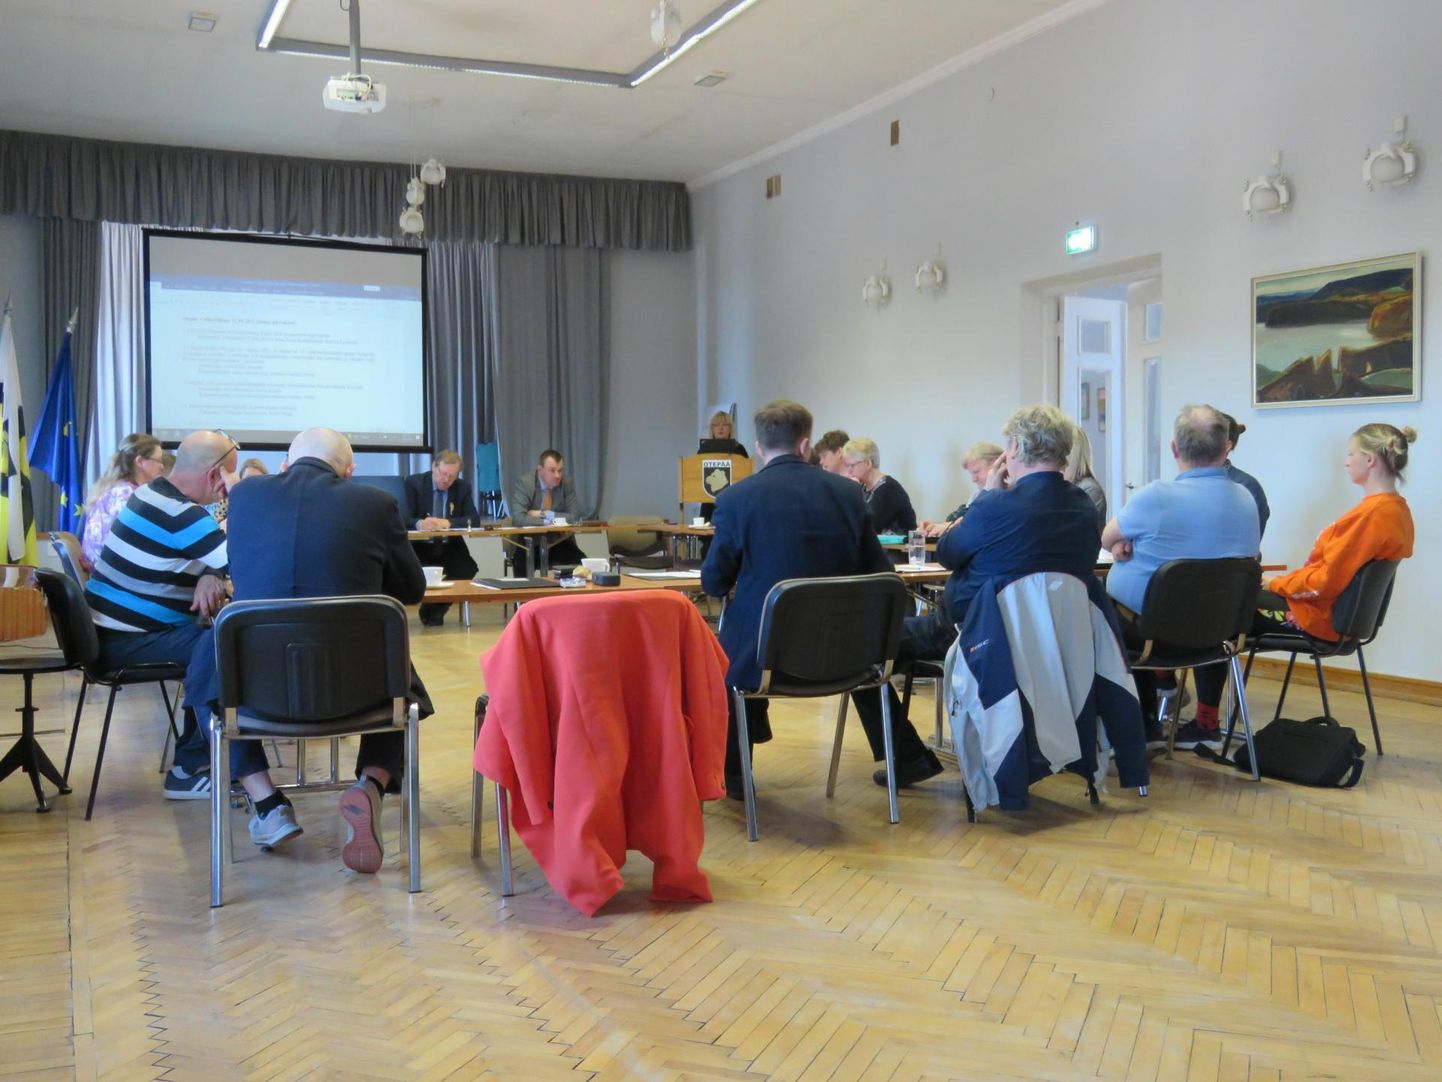 Otepää vallavolikogu 21. aprilli istungi päevakorras oli Puka kunstikooli tegevuse lõpetamise eelnõu, kuid selle punkti arutelu jäi ära, sest hariduskomisjoni esimees võttis eelnõu tagasi.